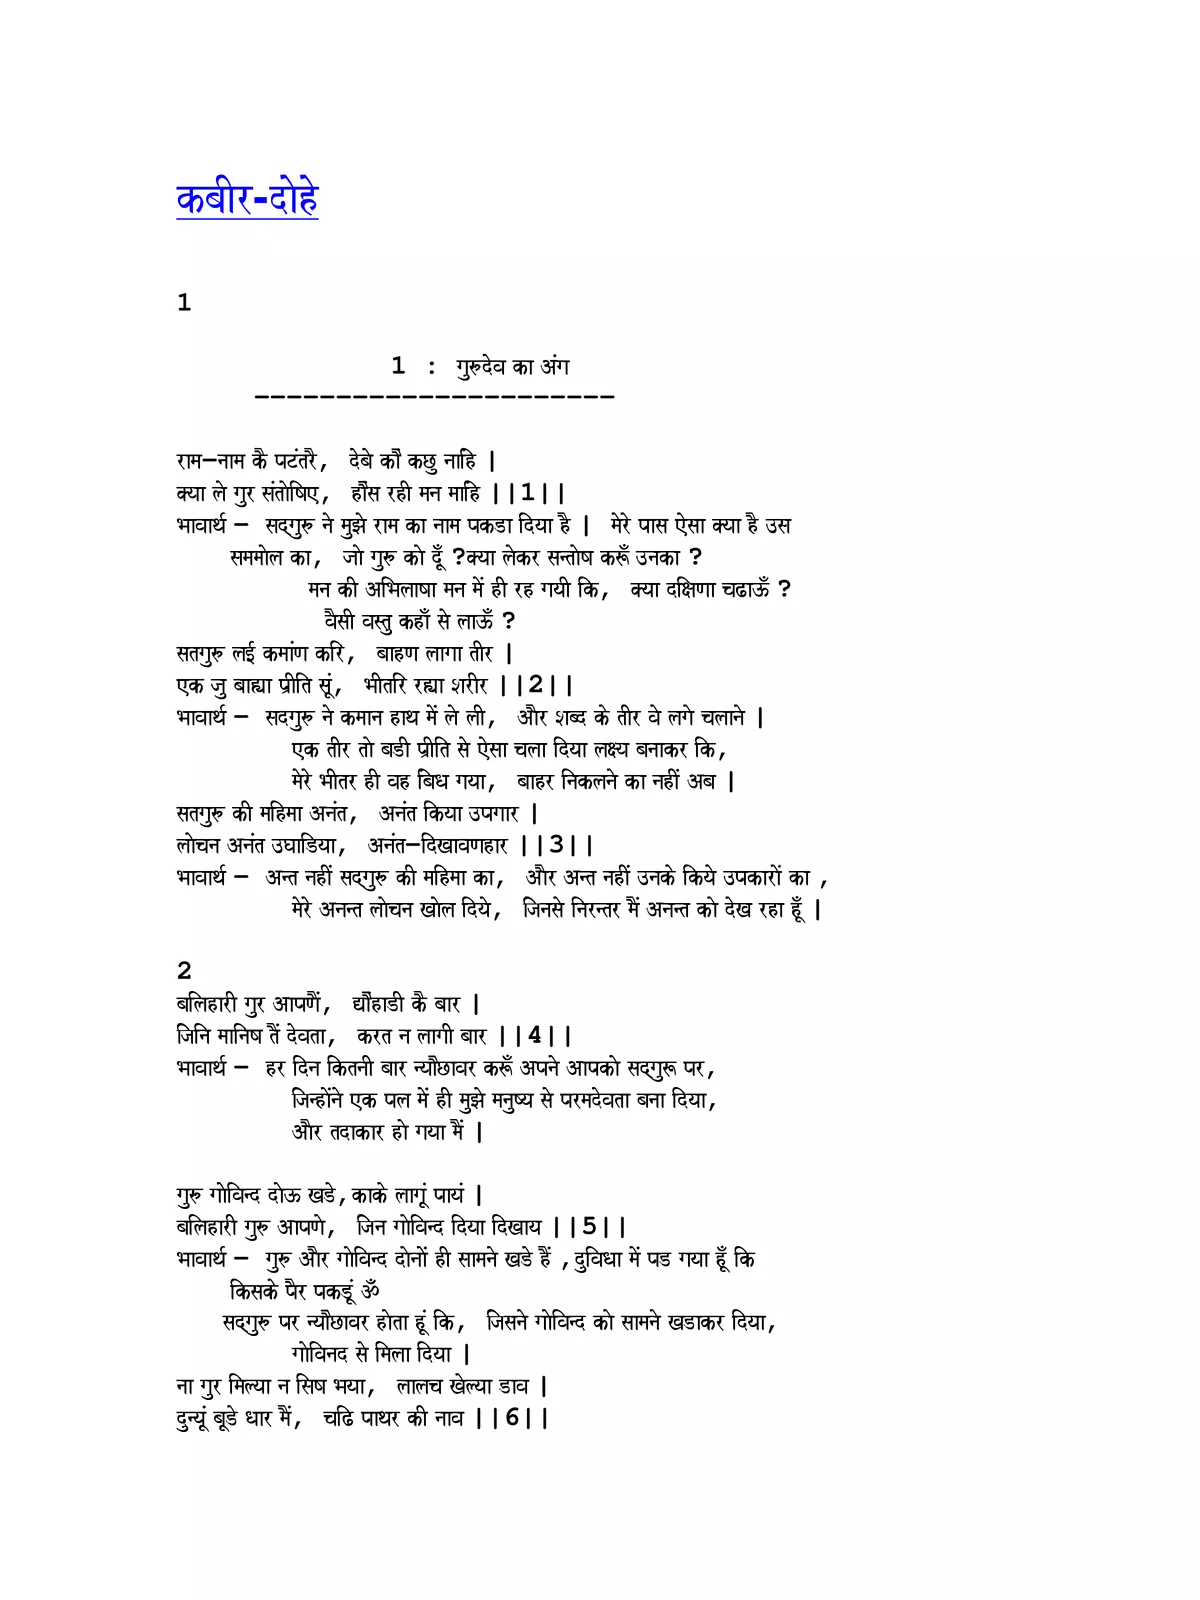 कबीरदास के दोहे (Kabir Dohe)